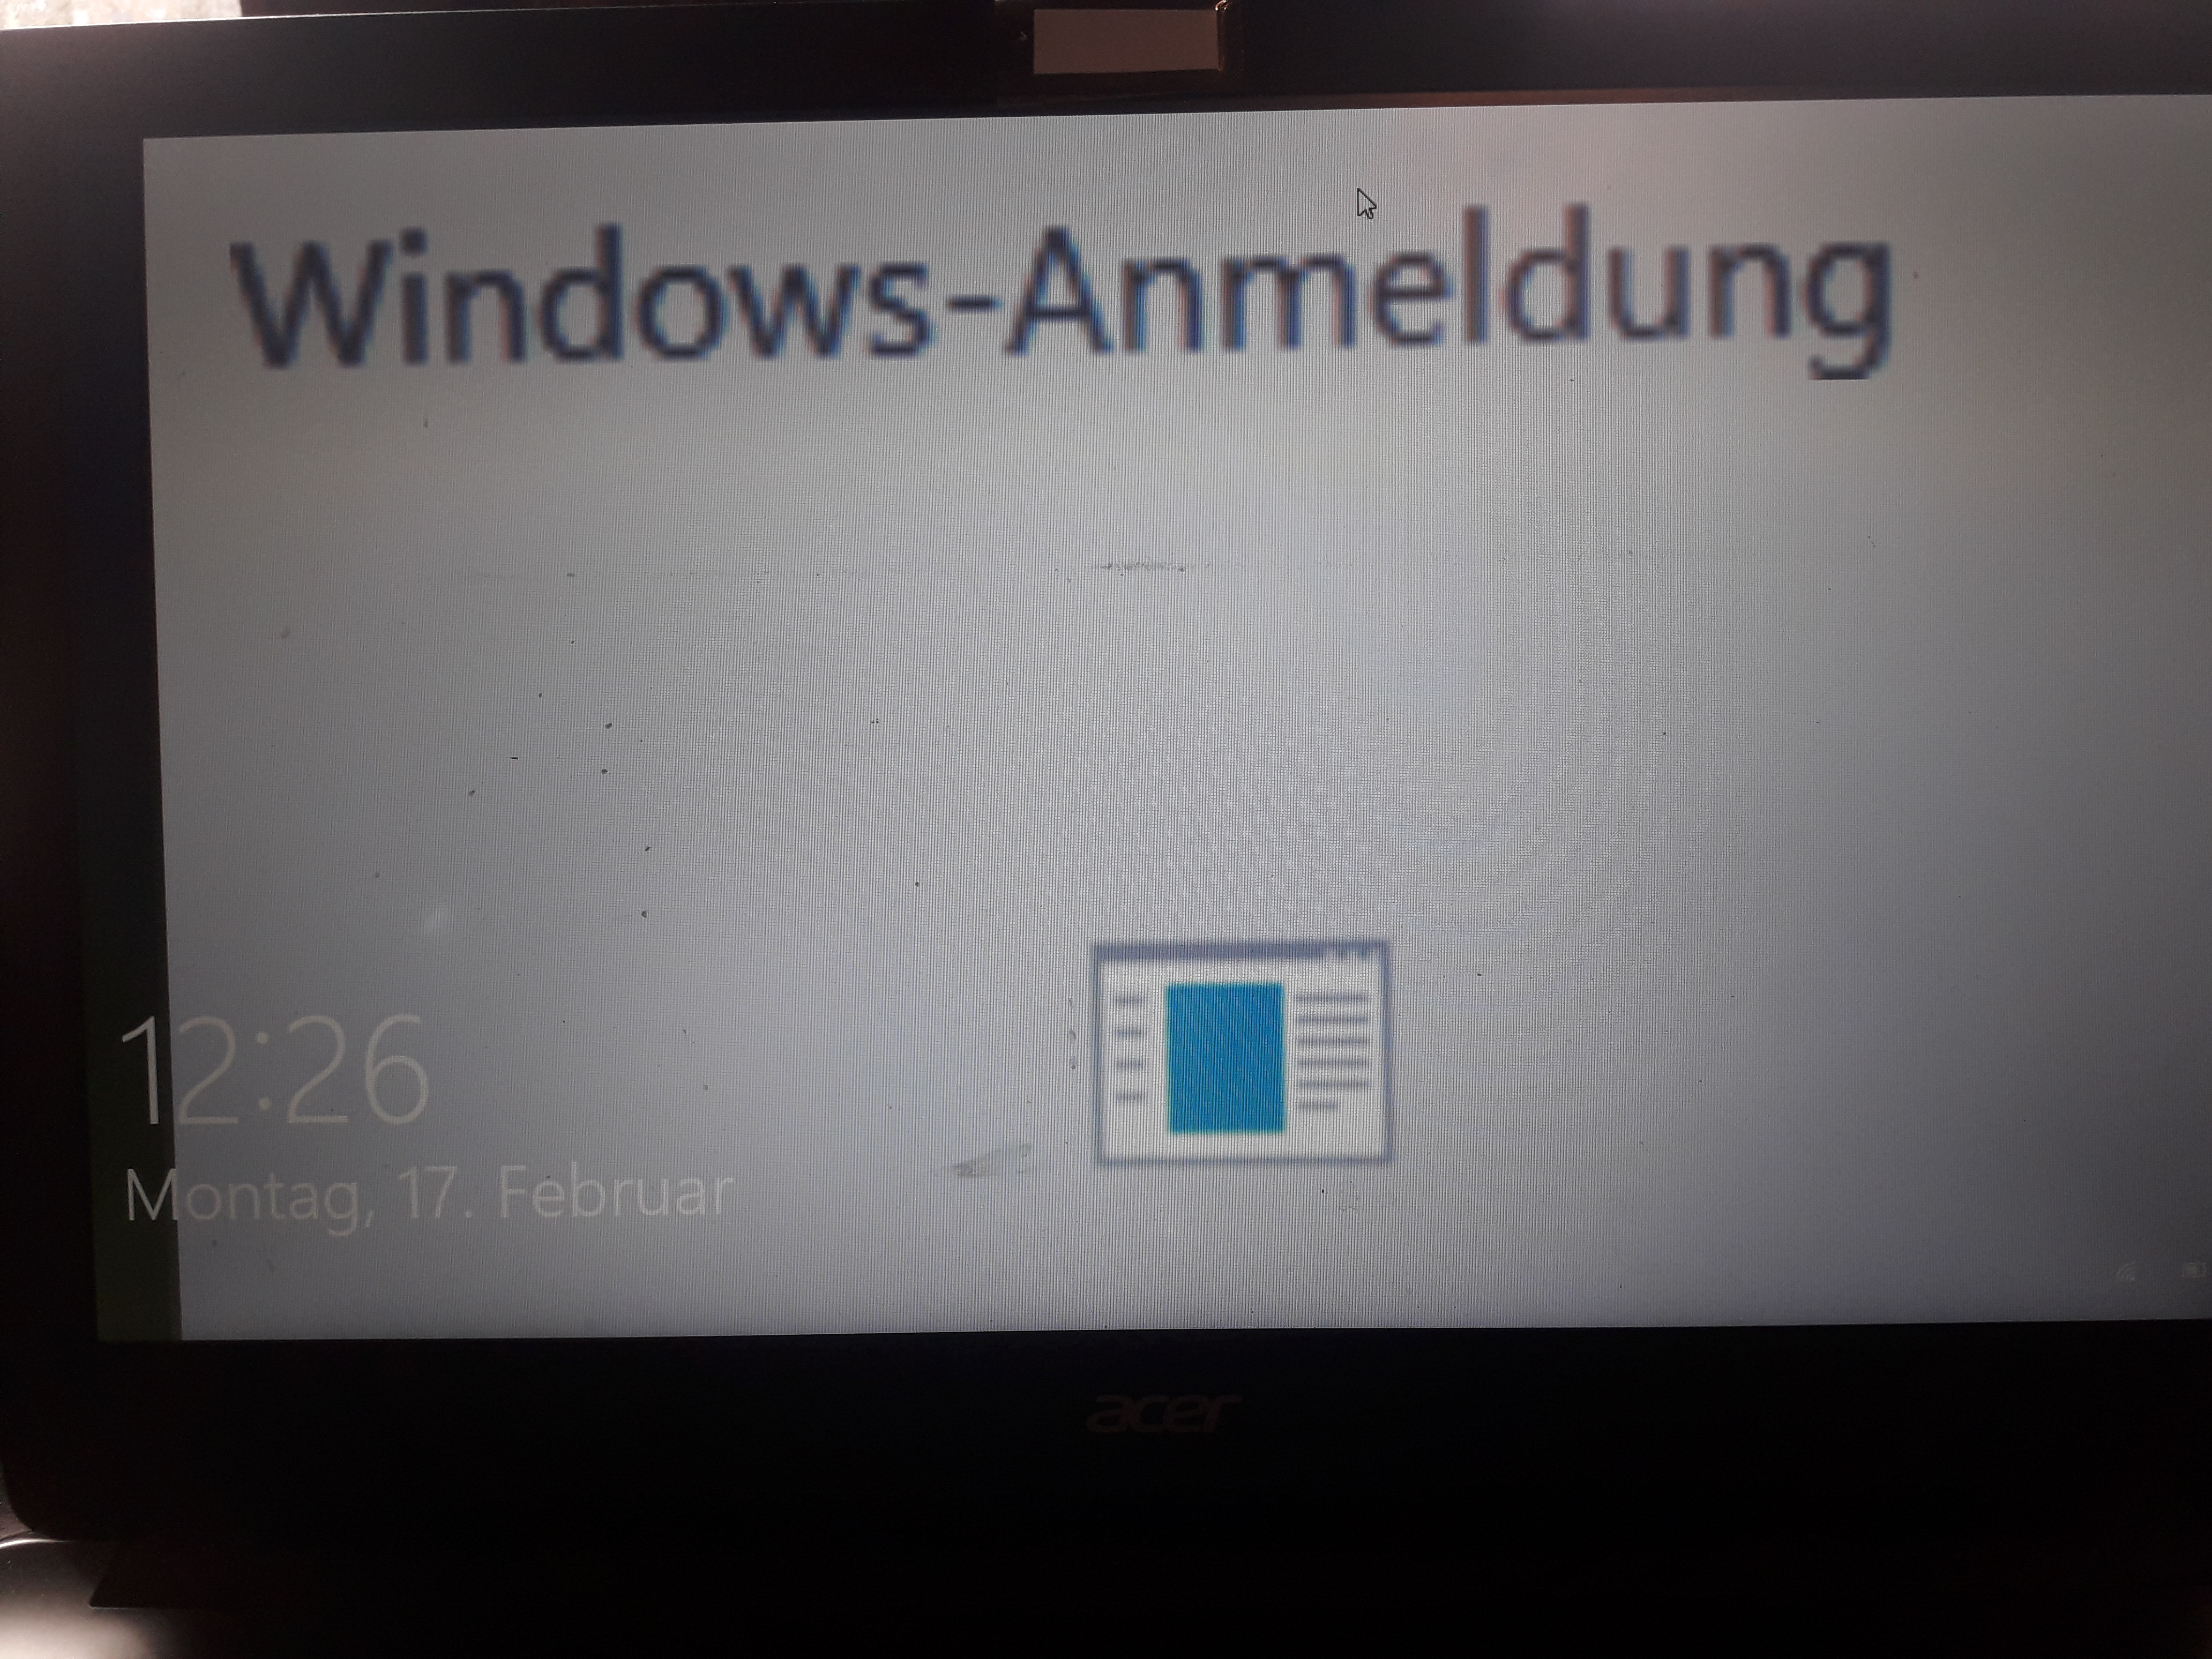 Windows 10 Anmeldung Sperrbildschirm aufgehängt